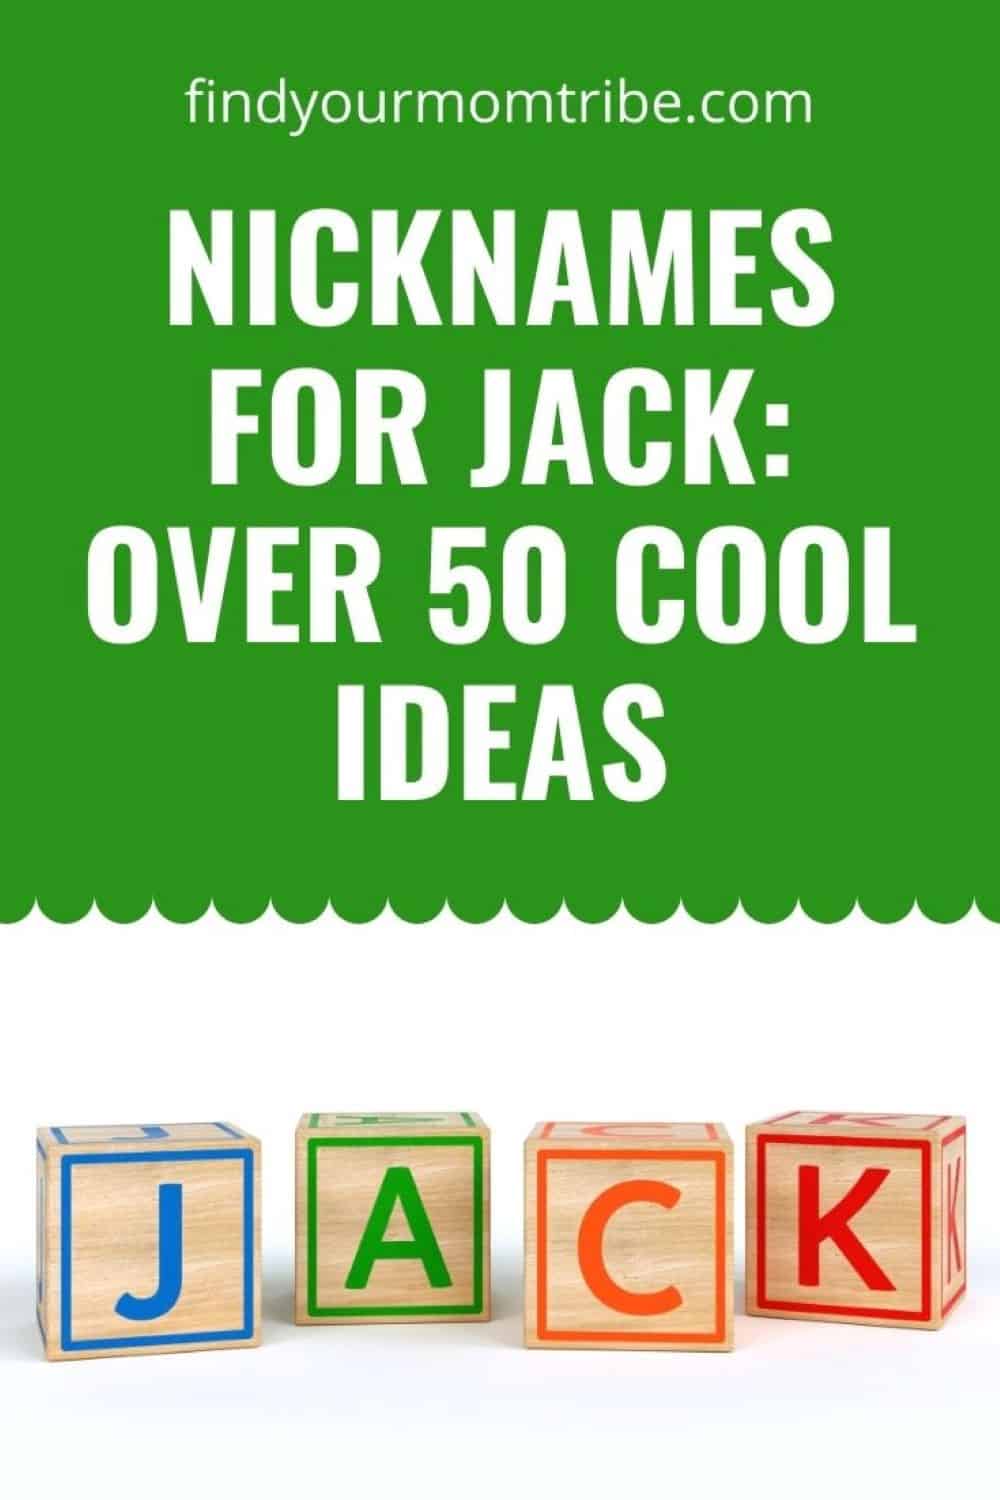 Pinterest nicknames for jack